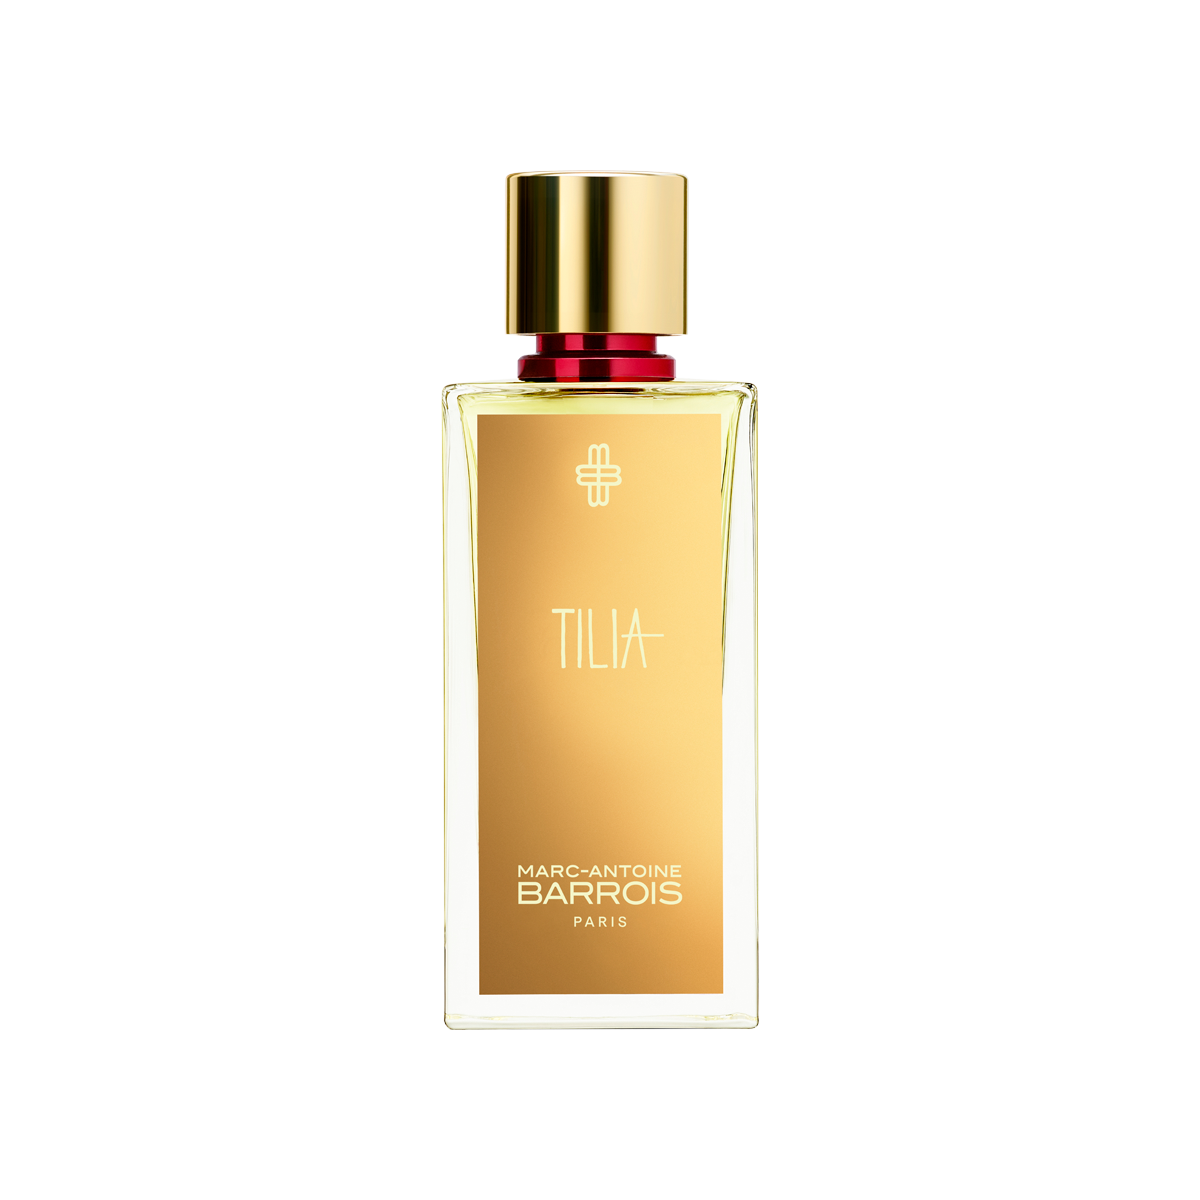 Marc-Antoine Barrois - Tilia Eau de parfum